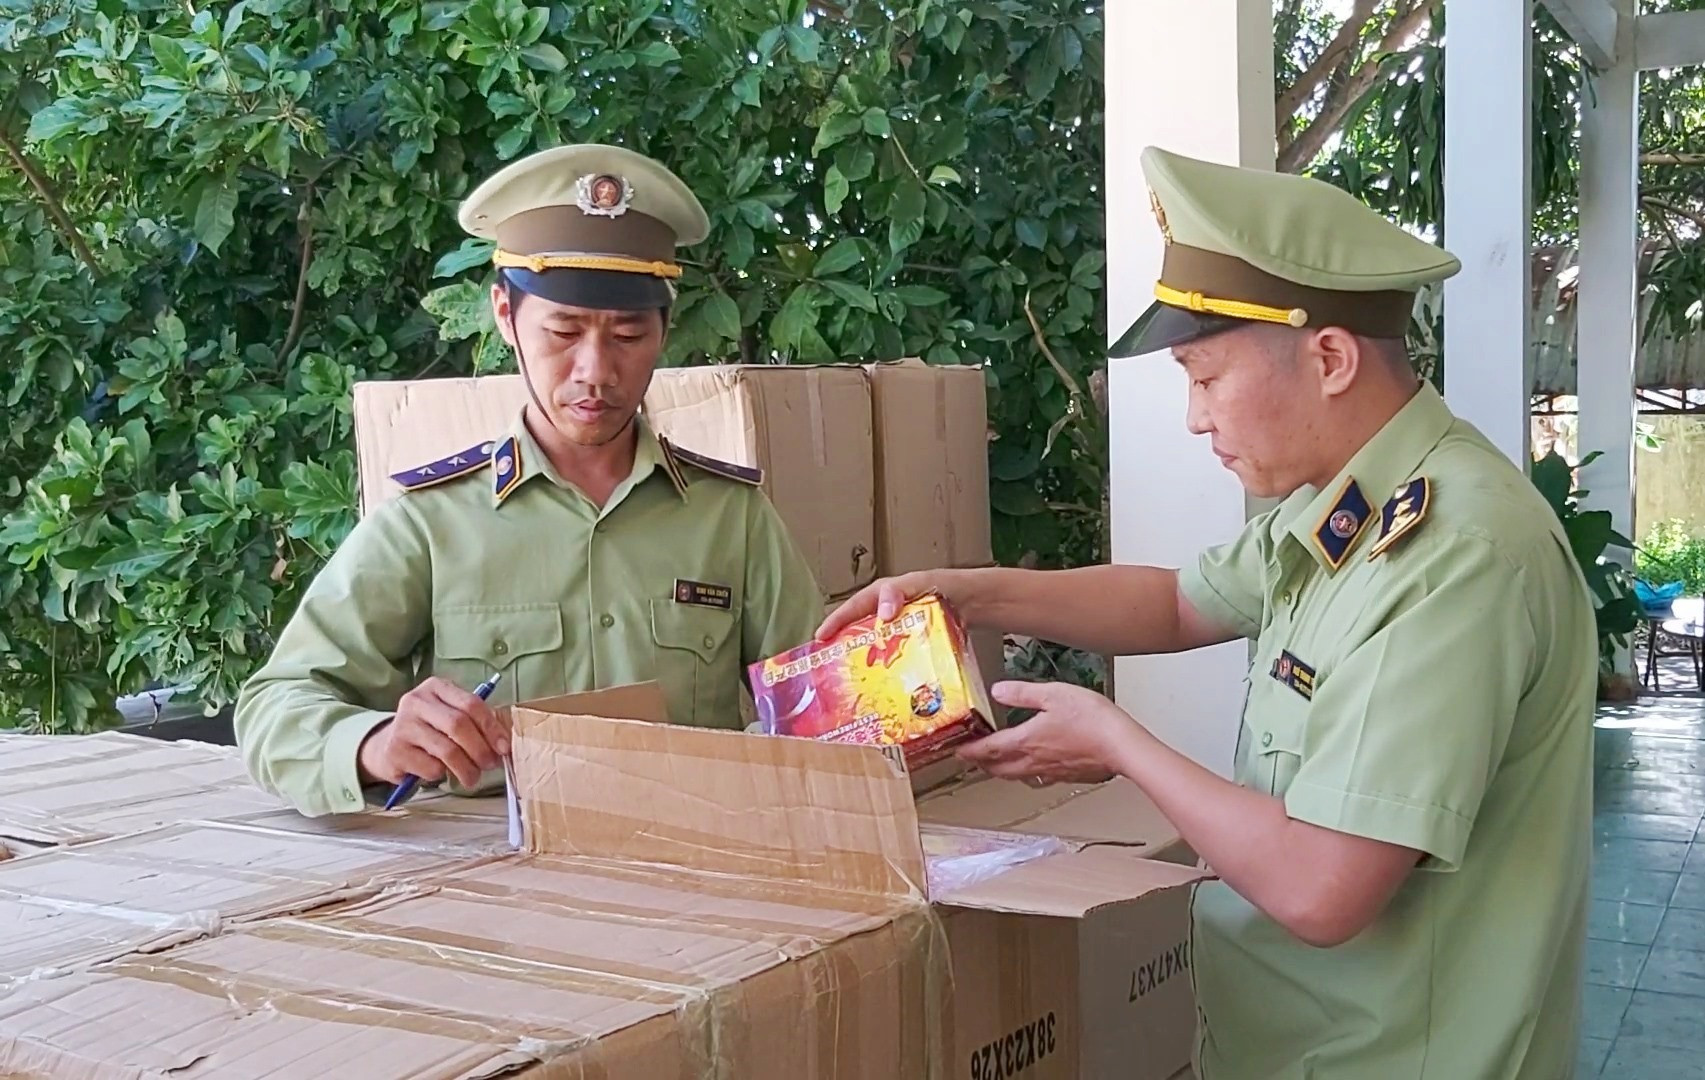 Lực lượng Quản lý thị trường Quảng Nam phát hiện hơn 800 kg pháo các loại không rõ nguồn gốc xuất xứ trên xe tải. Ảnh: THANH THẮNG